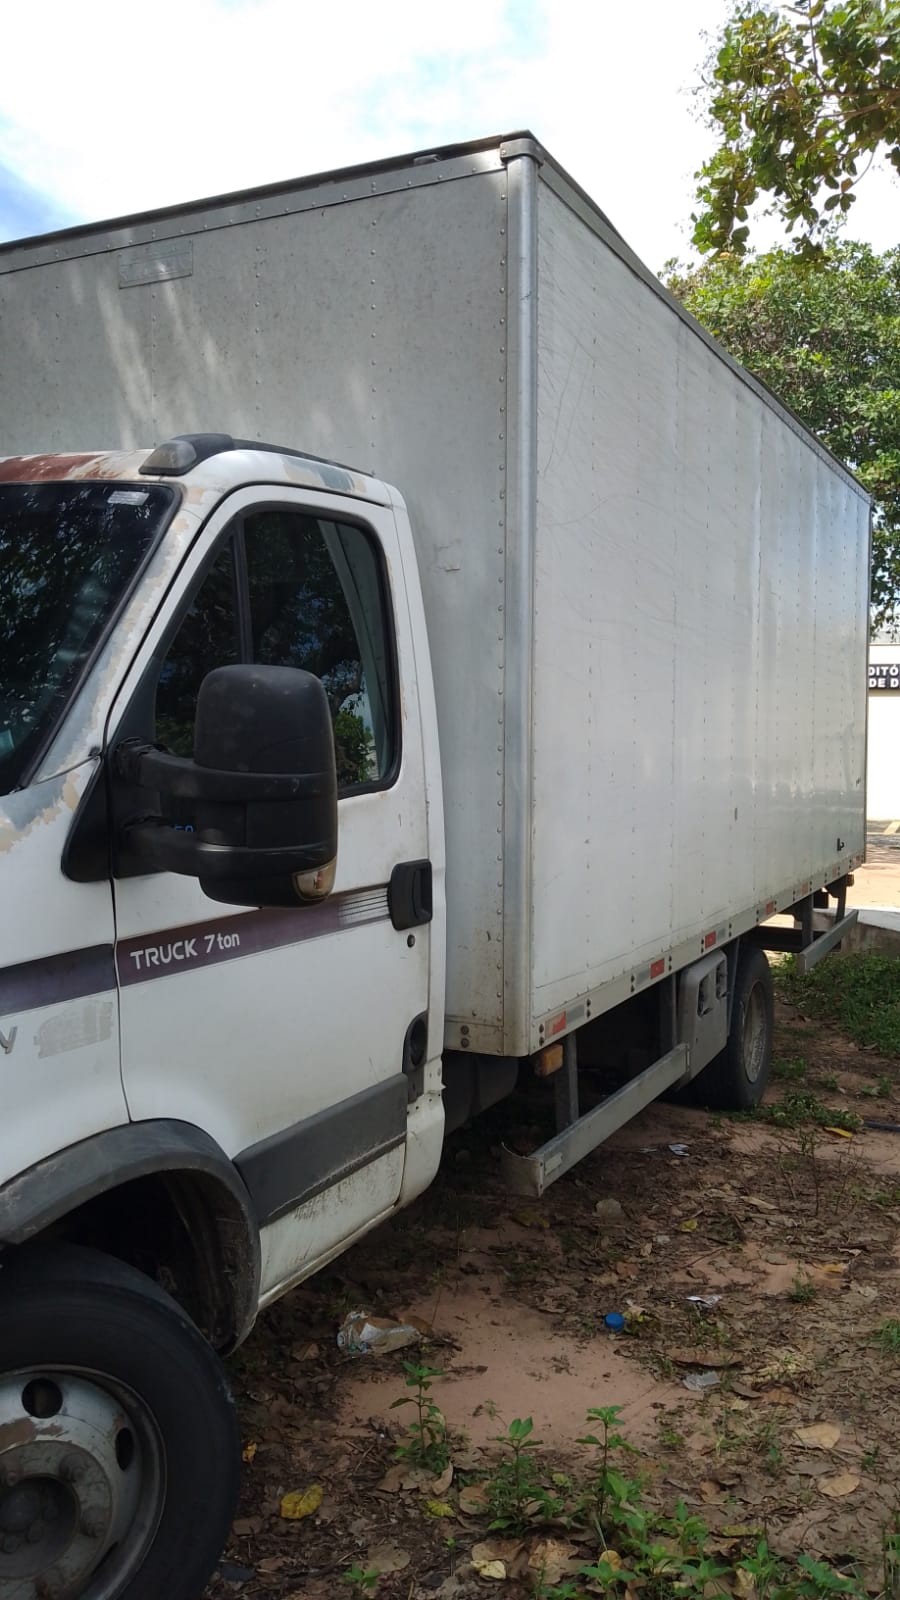 Viaturas com auditores fiscais são bloqueadas durante escolta e motorista de caminhão foge com carga apreendida na Grande Natal